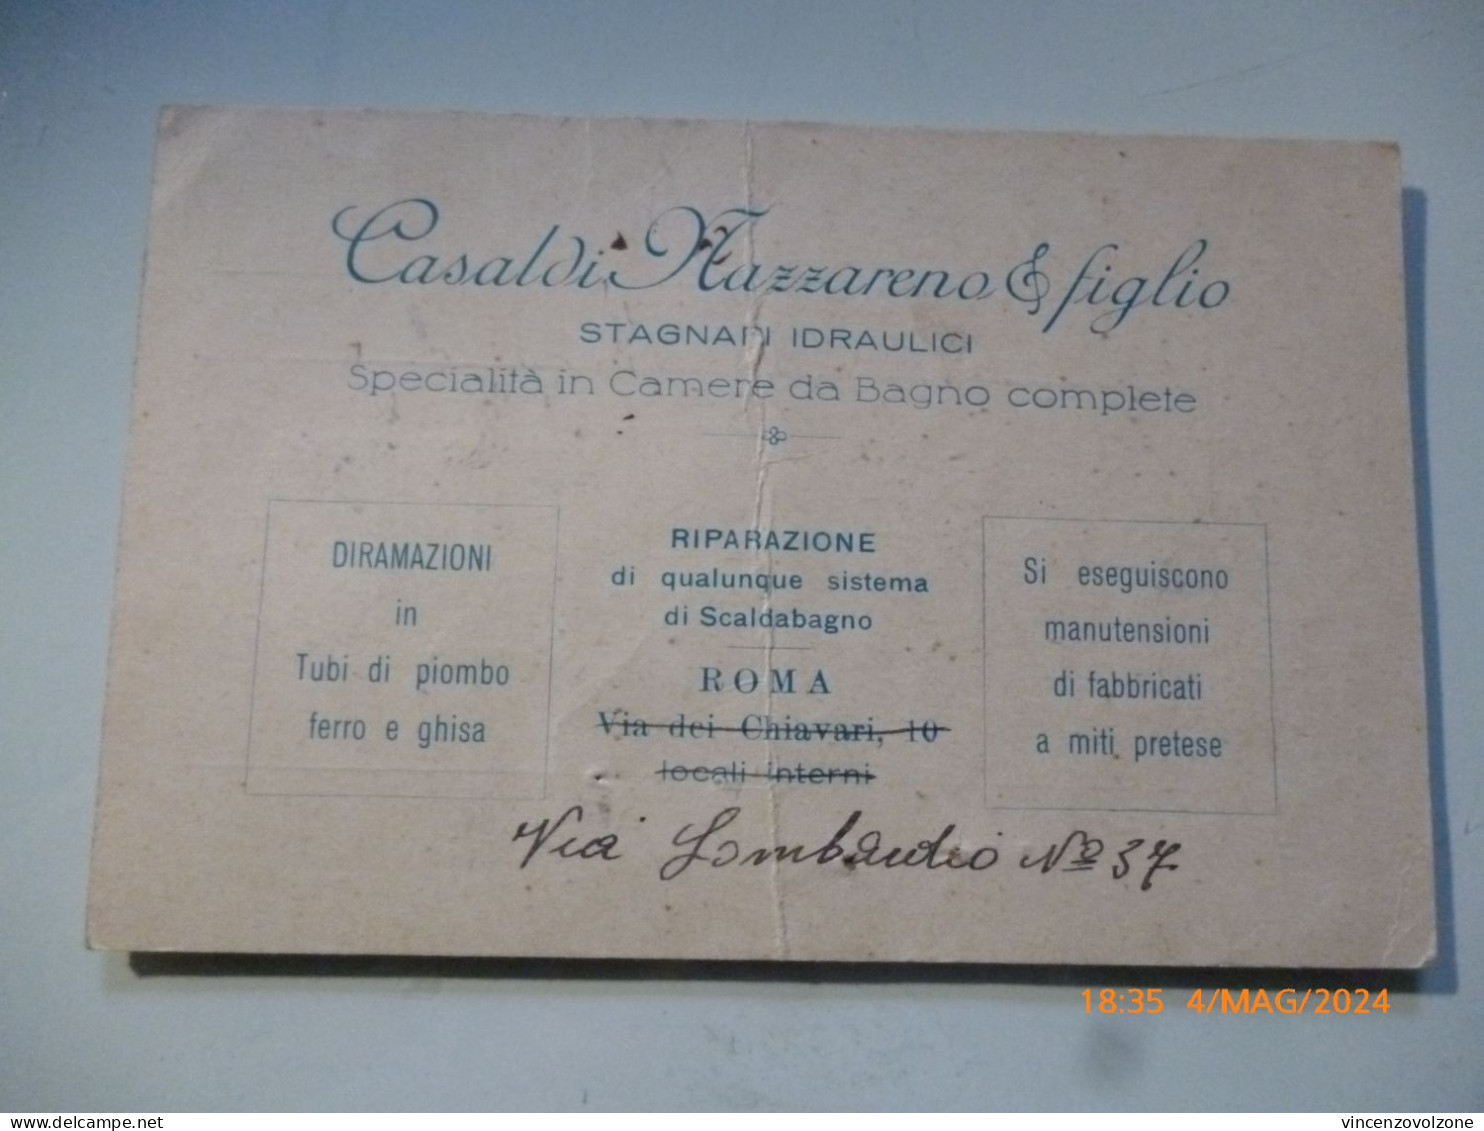 Cartoncino Ricevuta "CASALDI NAZZARENO & FIGLIO STAGNARI IDRAULICI ROMA" 1933 - Italy